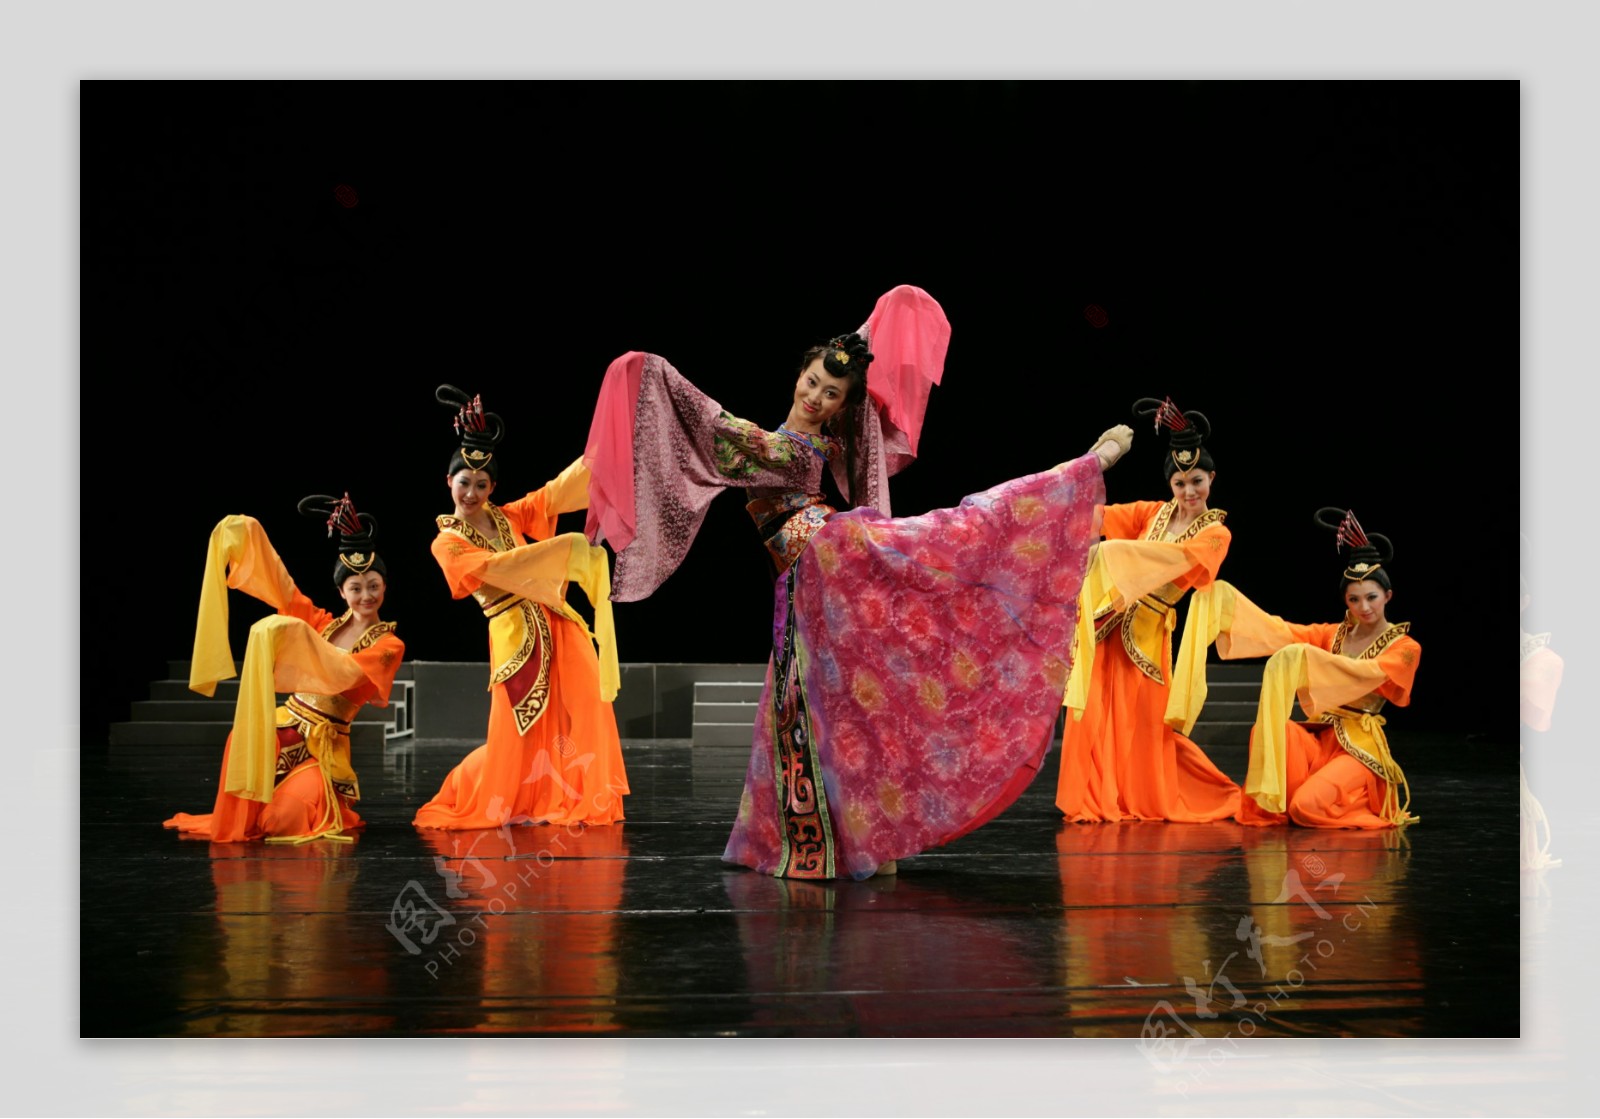 【古风雅致】北京舞蹈学院2013级青莲班舞剧《烟花易冷》 - Powered by Discuz!